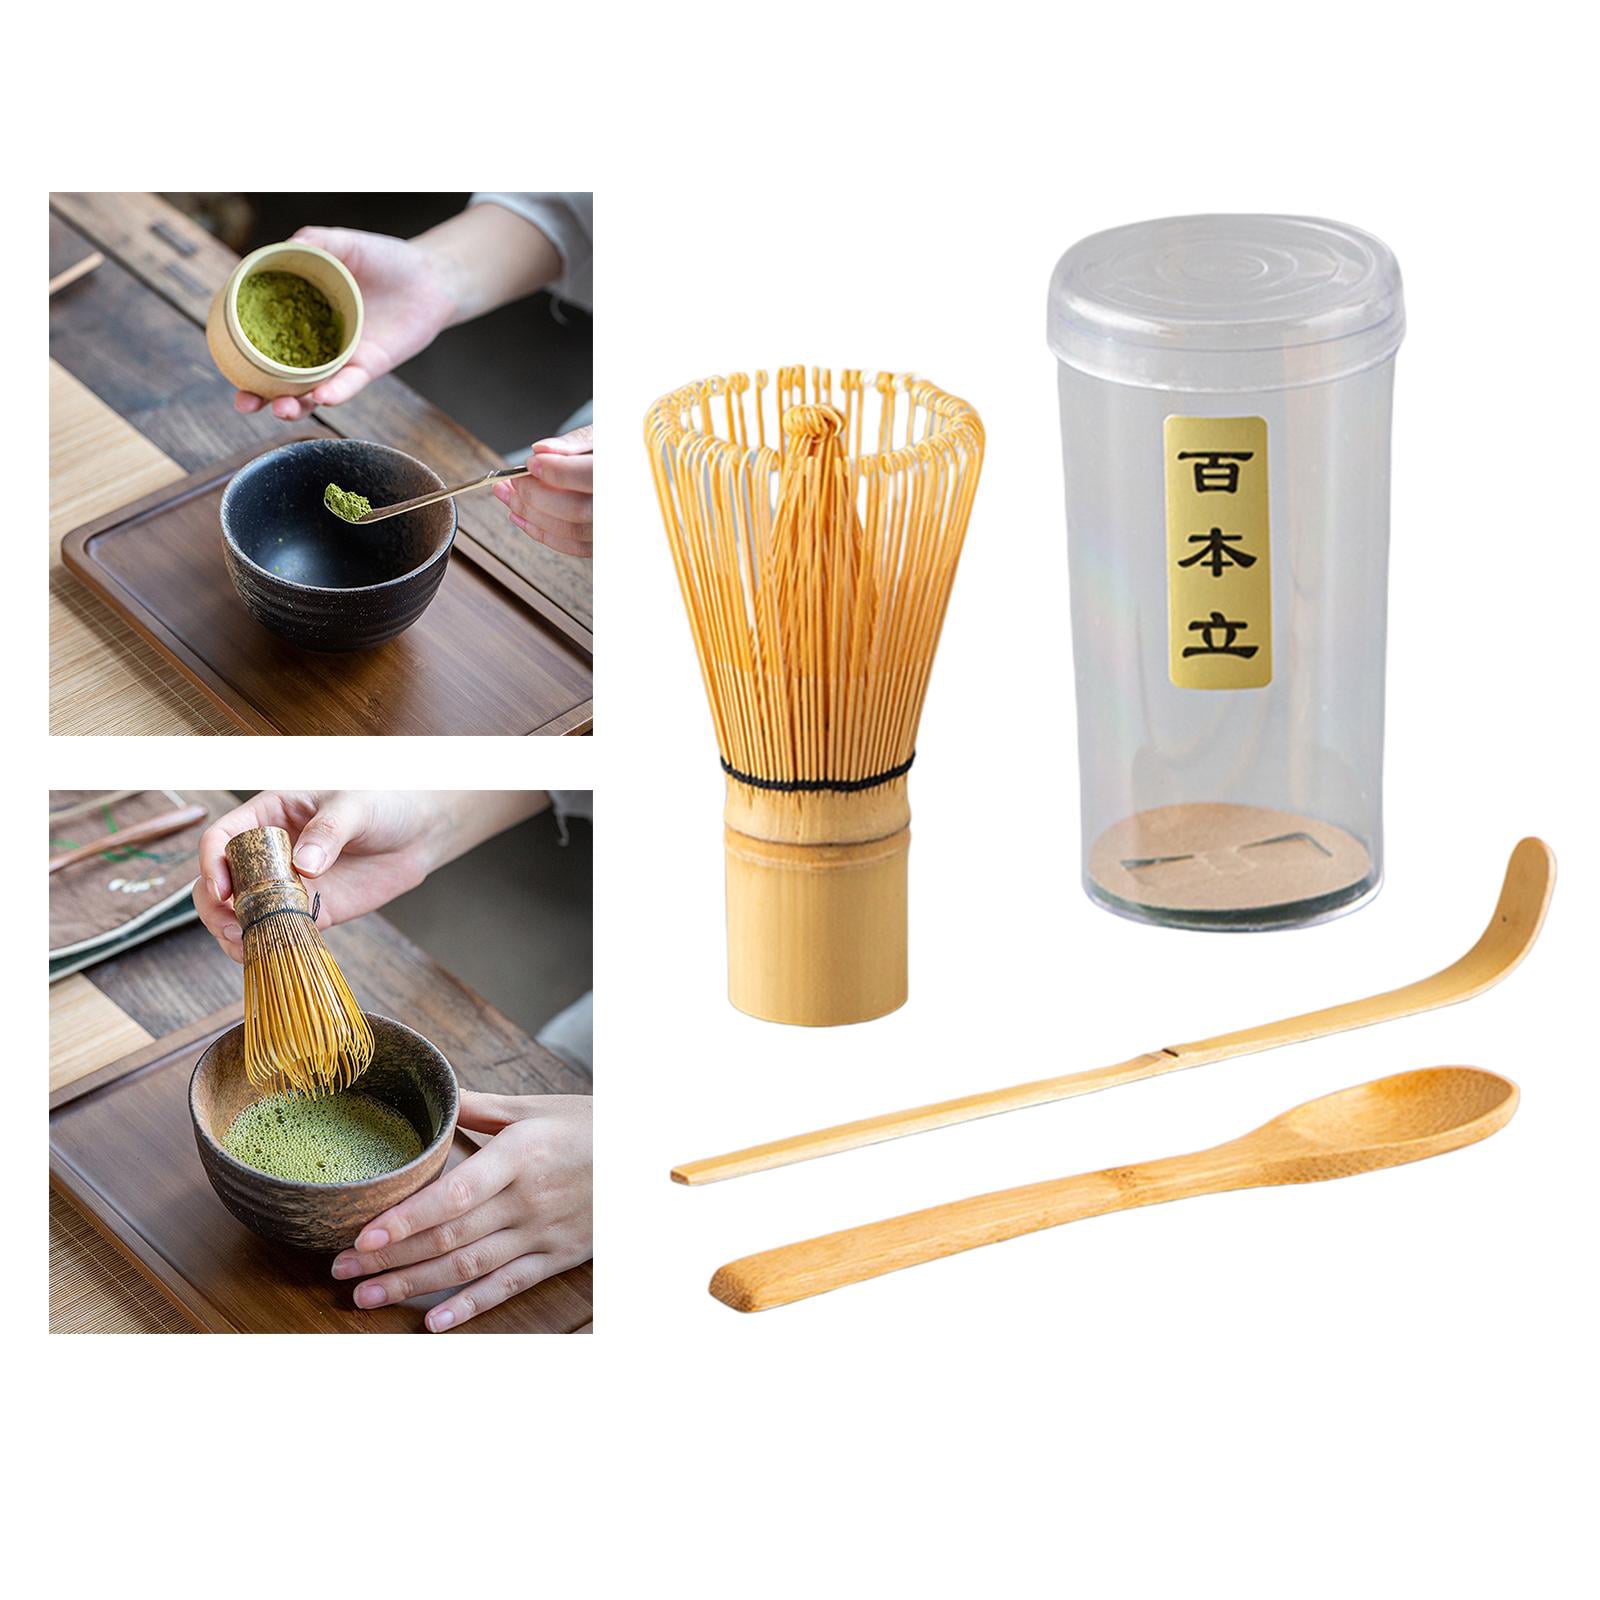 Matcha Bamboo Whisk Set, Buddha Teas